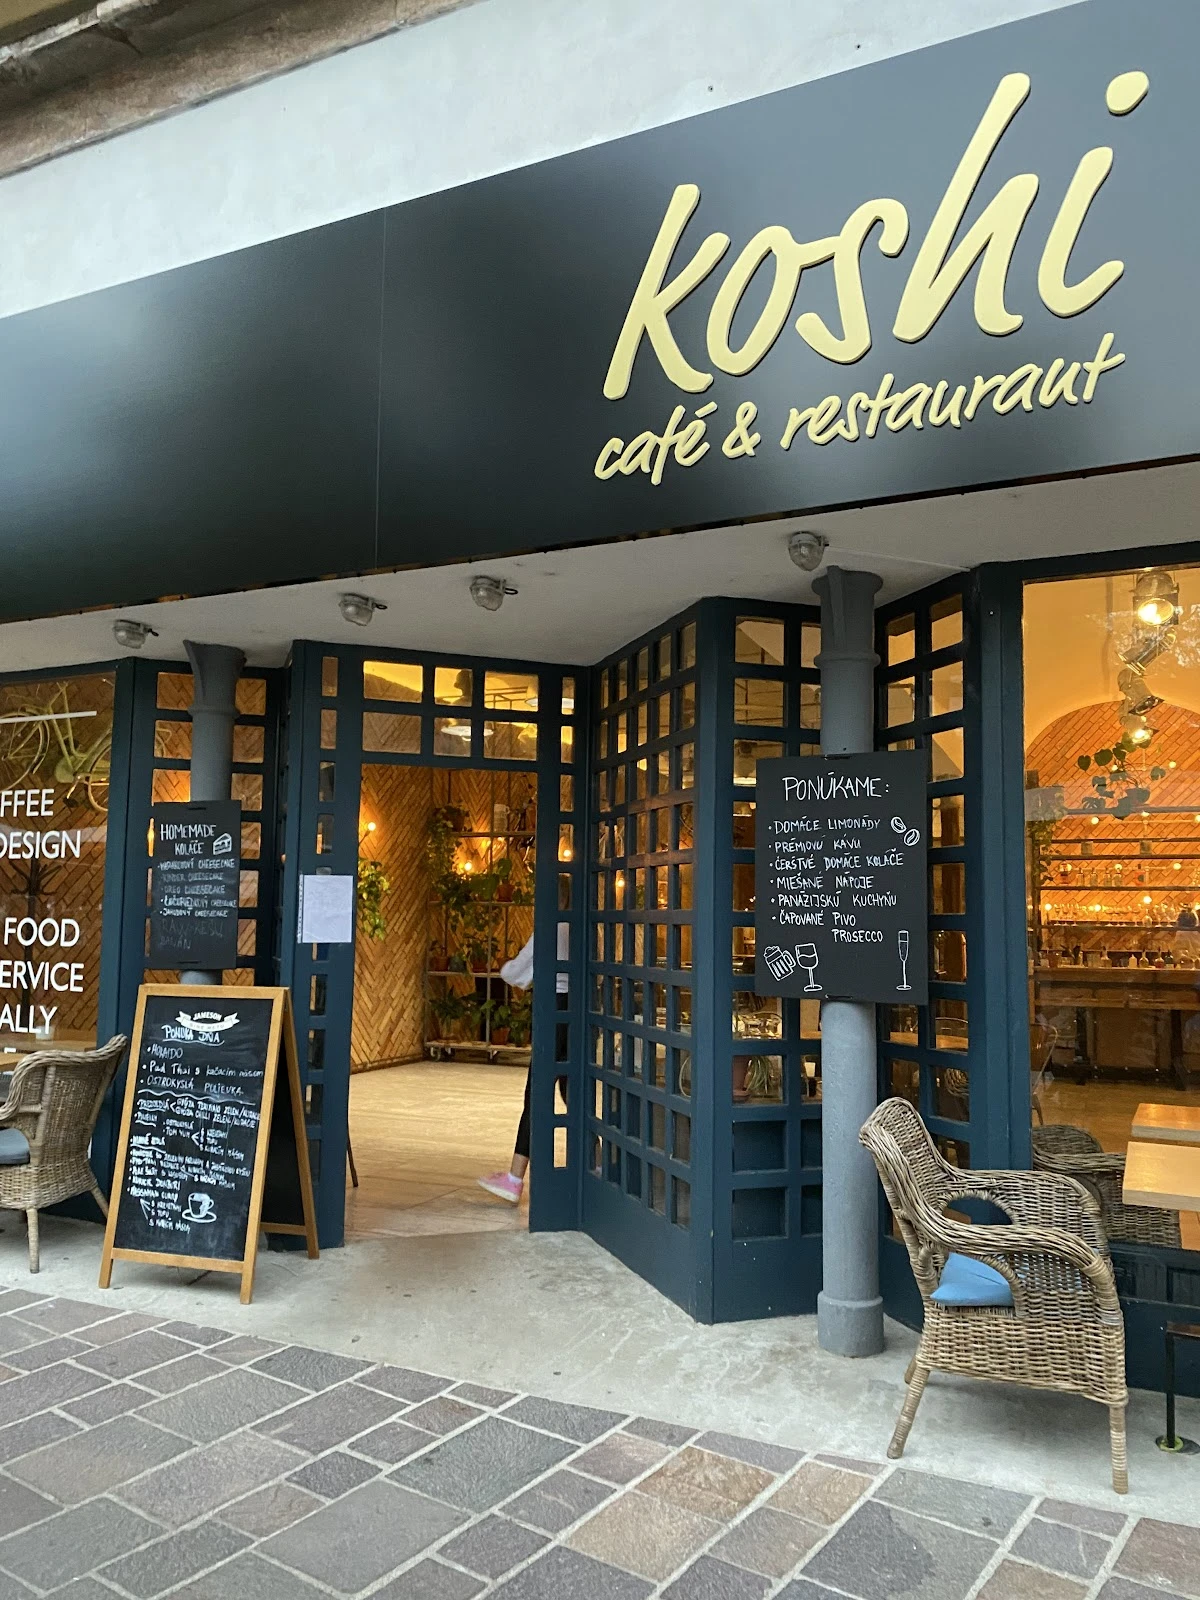 Koshi café and restaurant